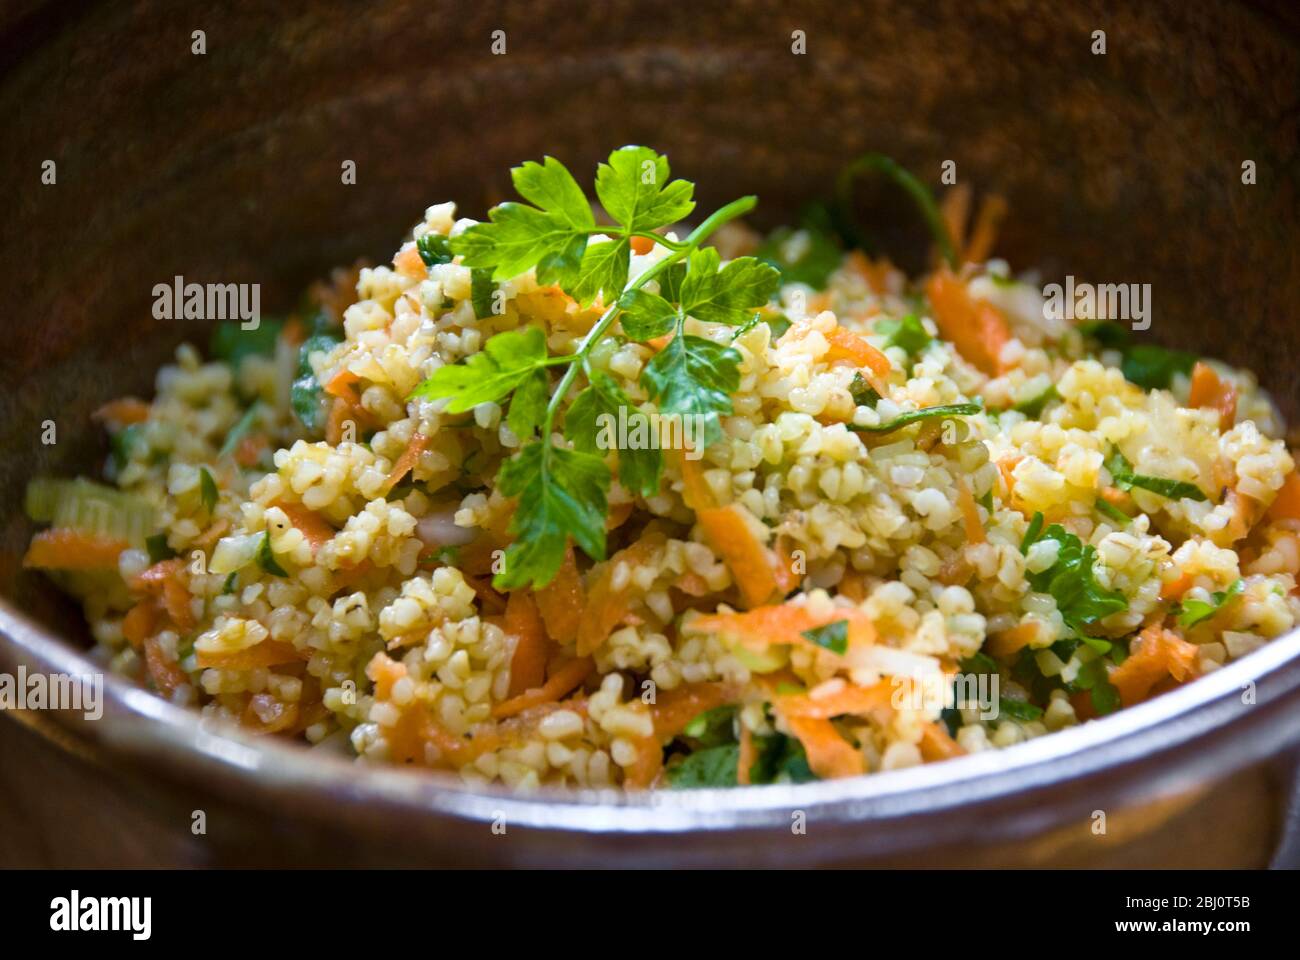 Salade saine de blé burghul à l'heure du déjeuner avec carottes râpées, jus de citron, huile d'olive, concombre haché et persil. - Banque D'Images